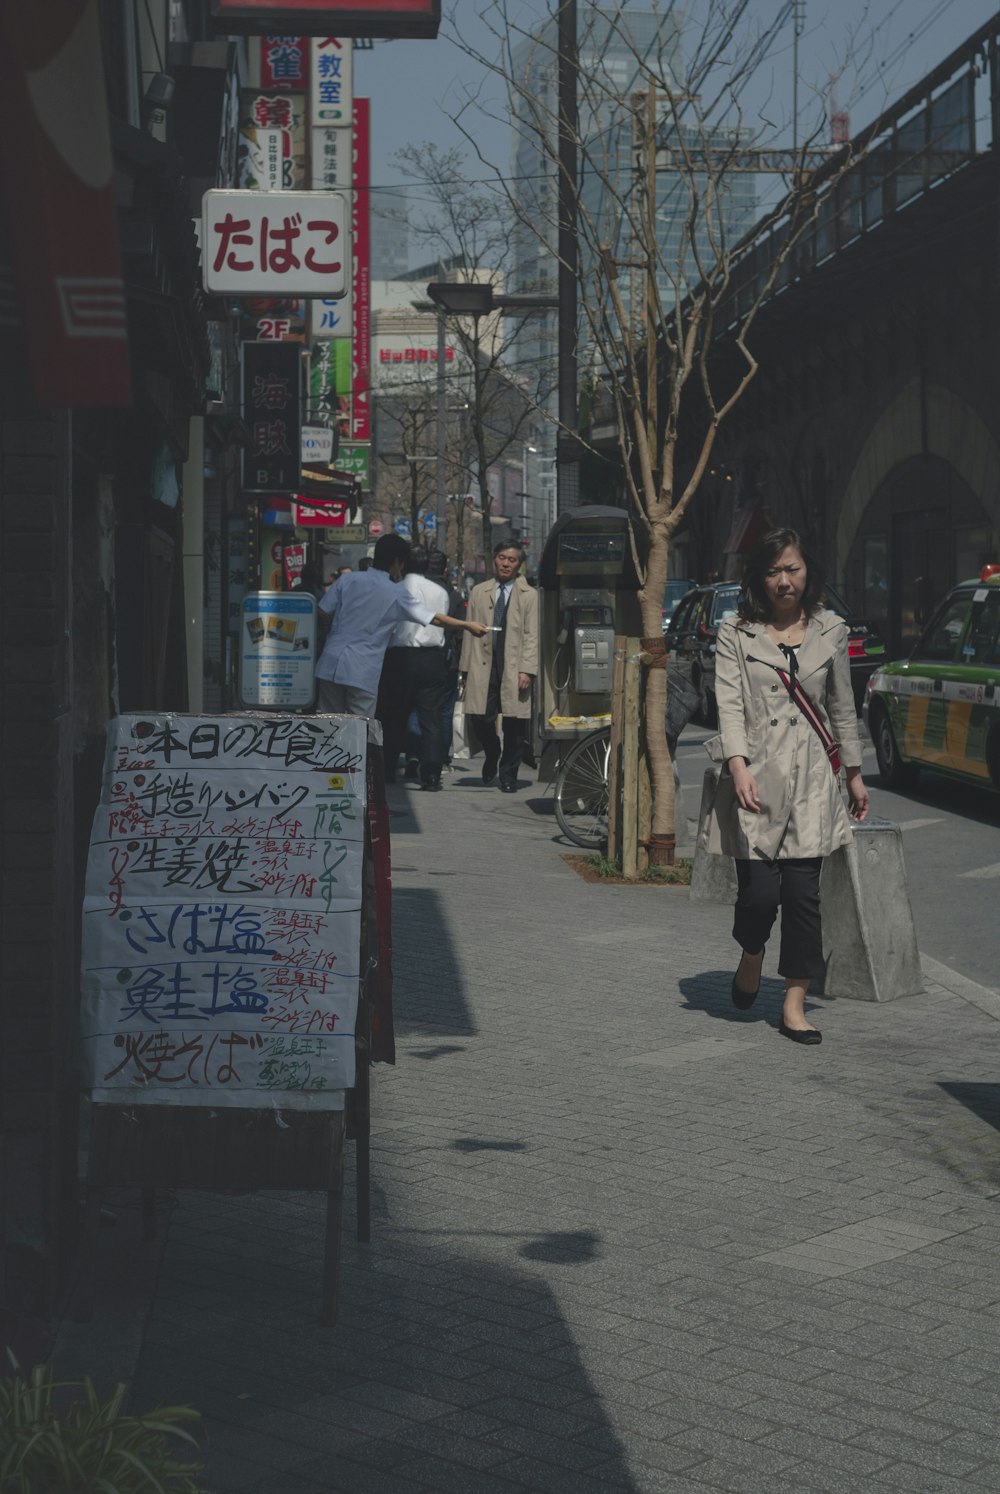 Une femme marchant dans une rue tenant des sacs de courses